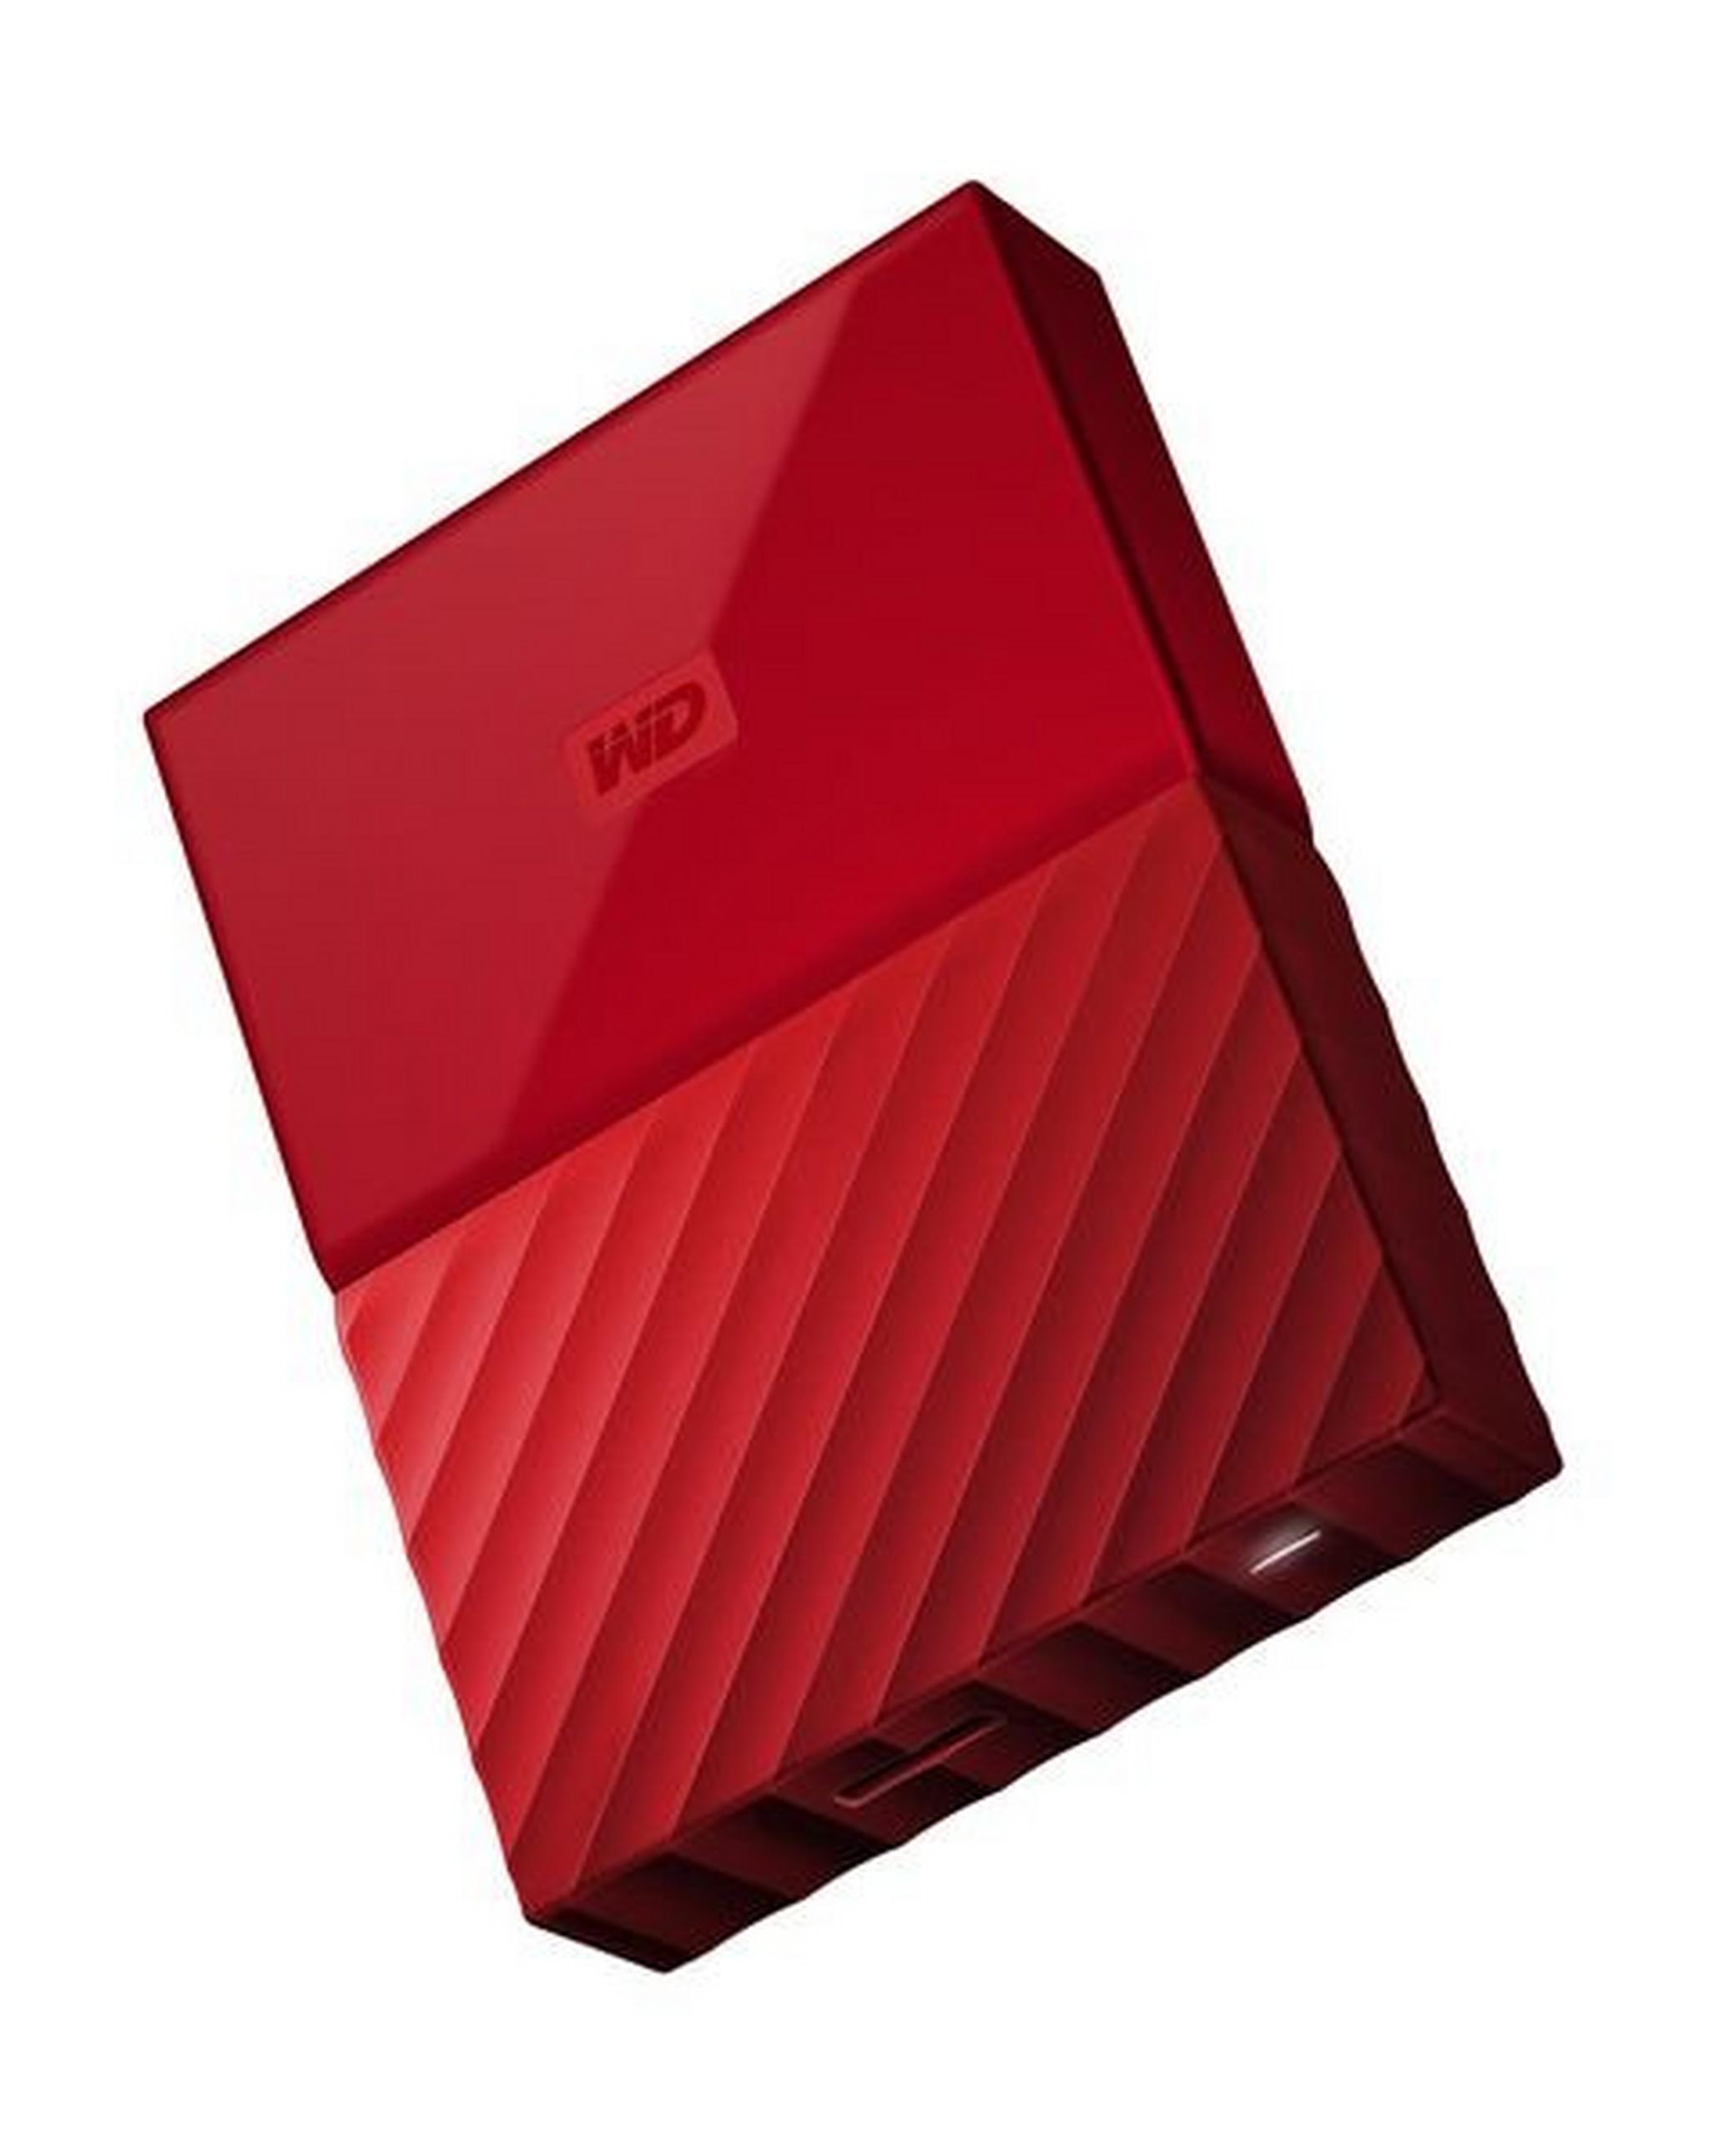 WD 1TB My Passport USB 3.0 External Hard Drive - Red